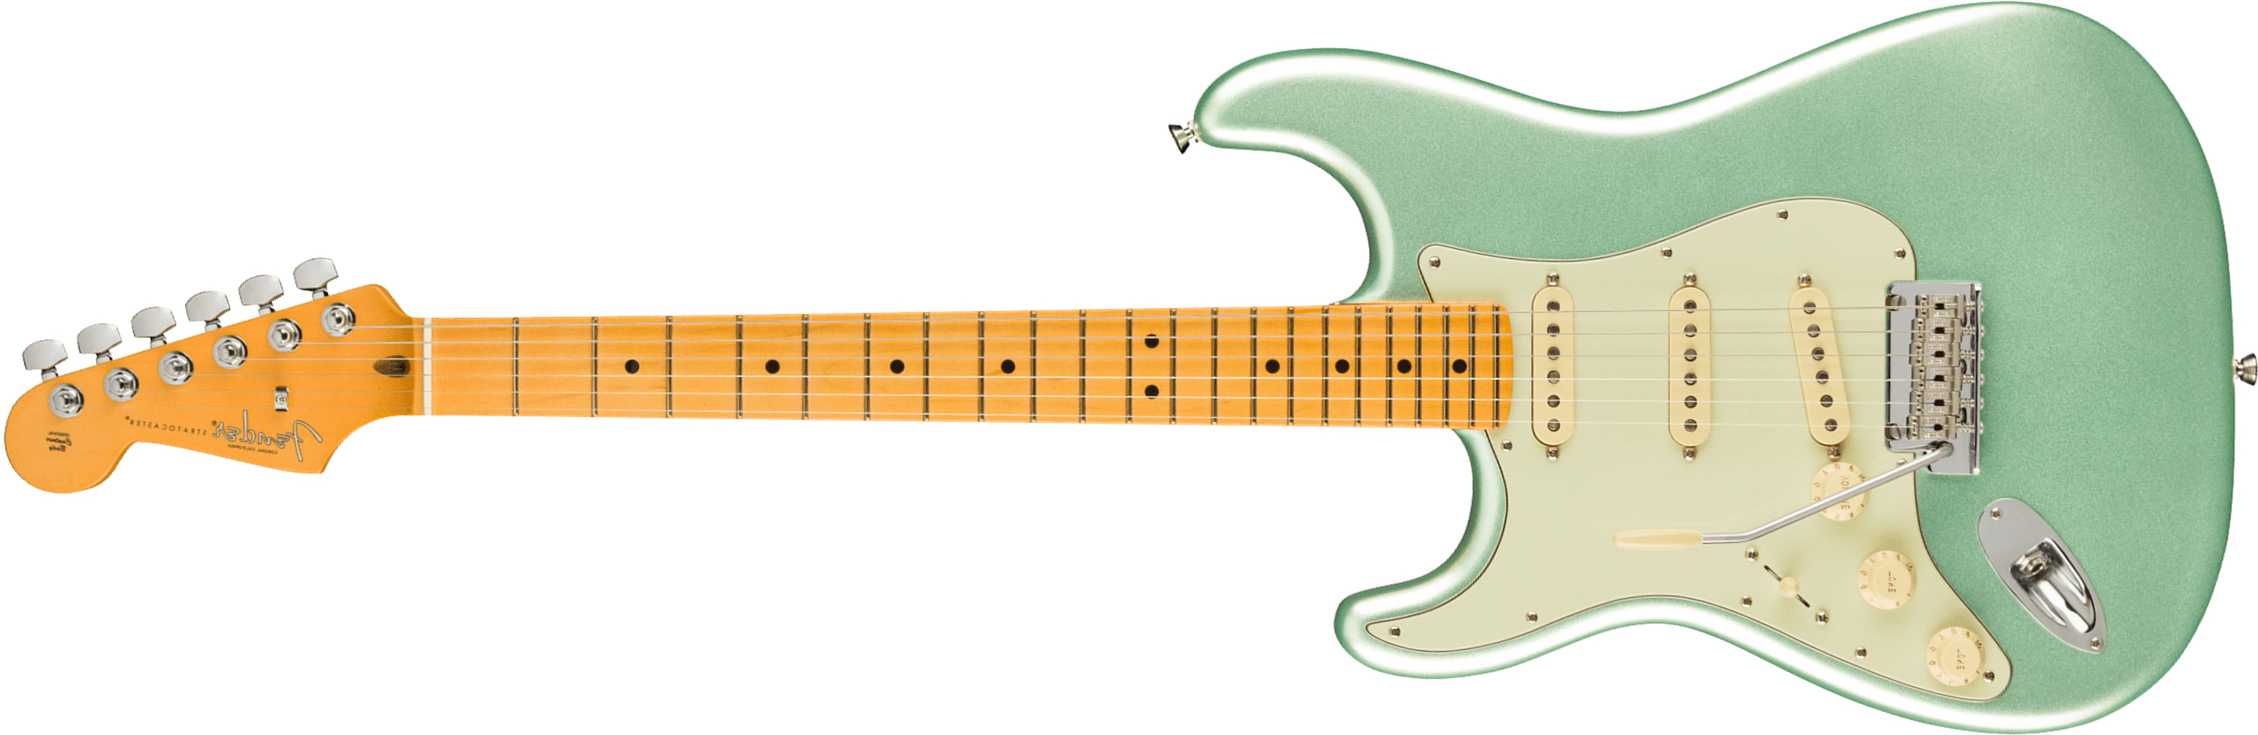 Fender Strat American Professional Ii Lh Gaucher Usa Mn - Mystic Surf Green - Linkshandige elektrische gitaar - Main picture